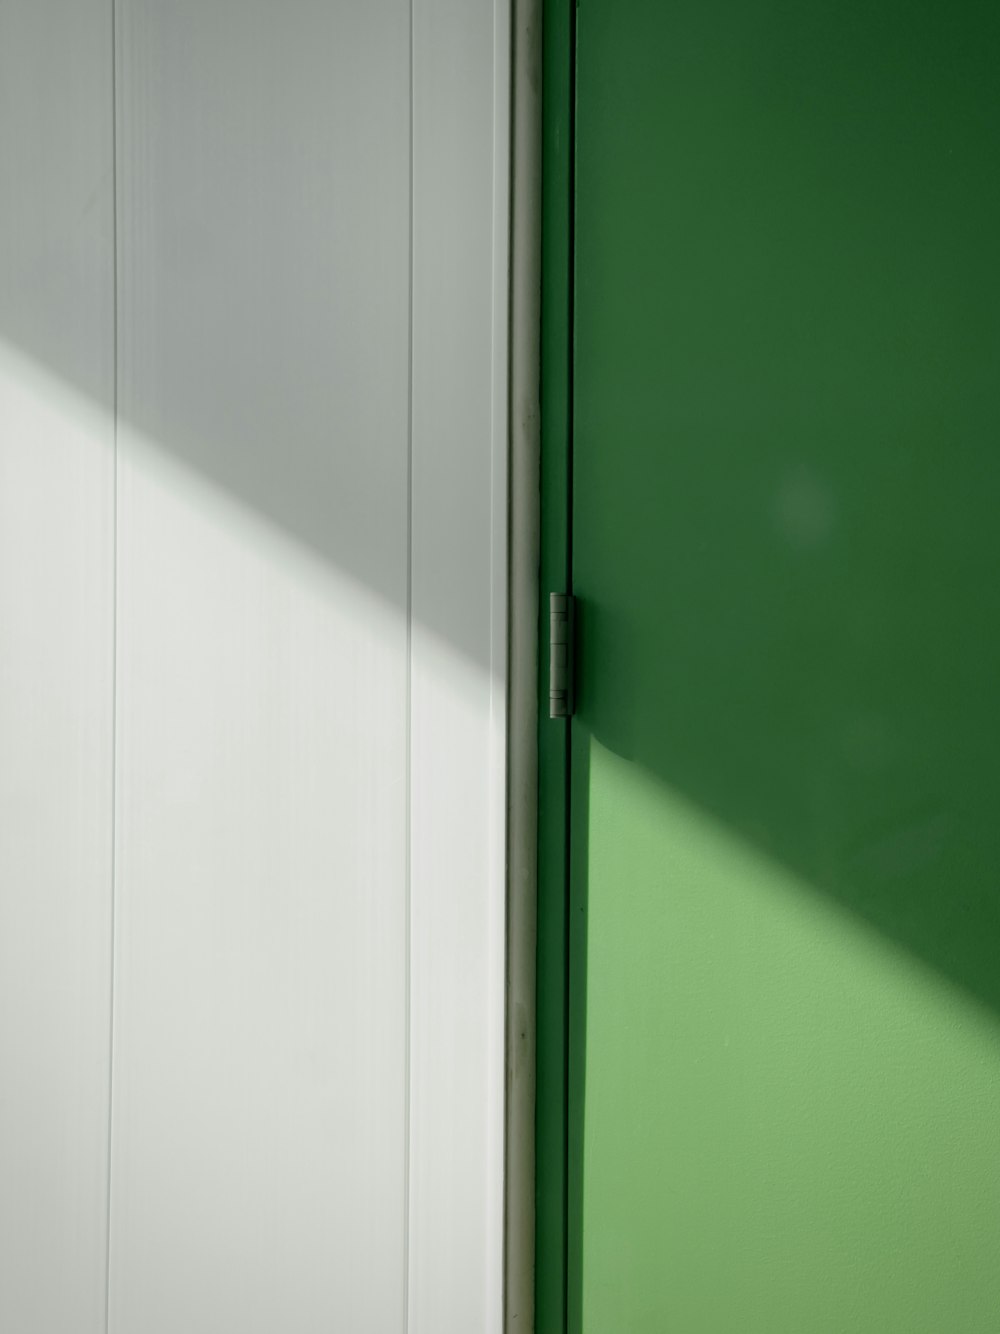 a close up of a green door